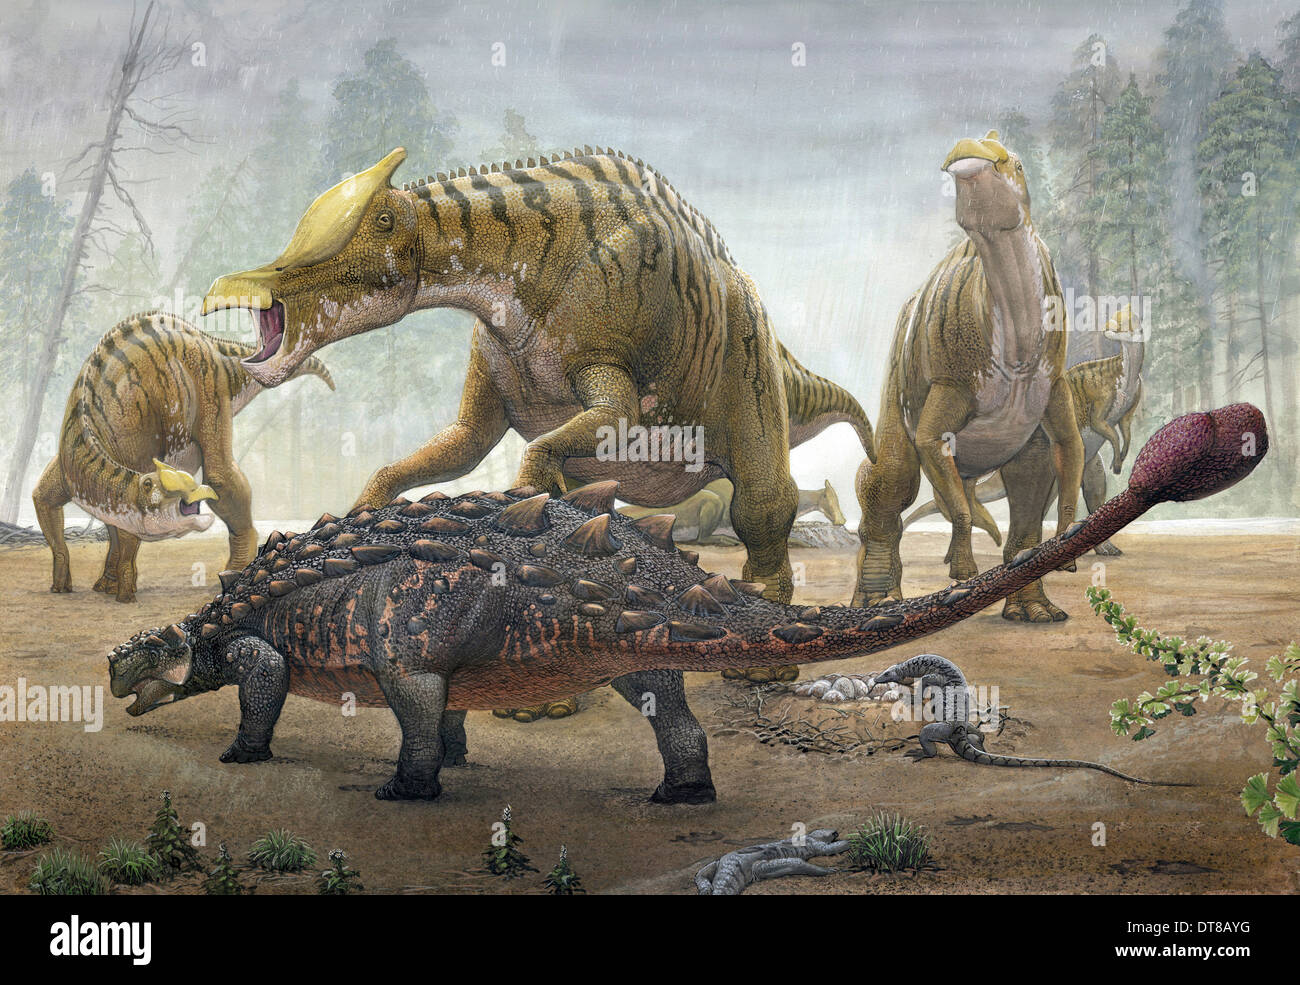 Una femmina di Saurolophus tenta di schiacciare una Tarchia dinosauro corazzato come si cerca di distruggere i loro nidi. Foto Stock